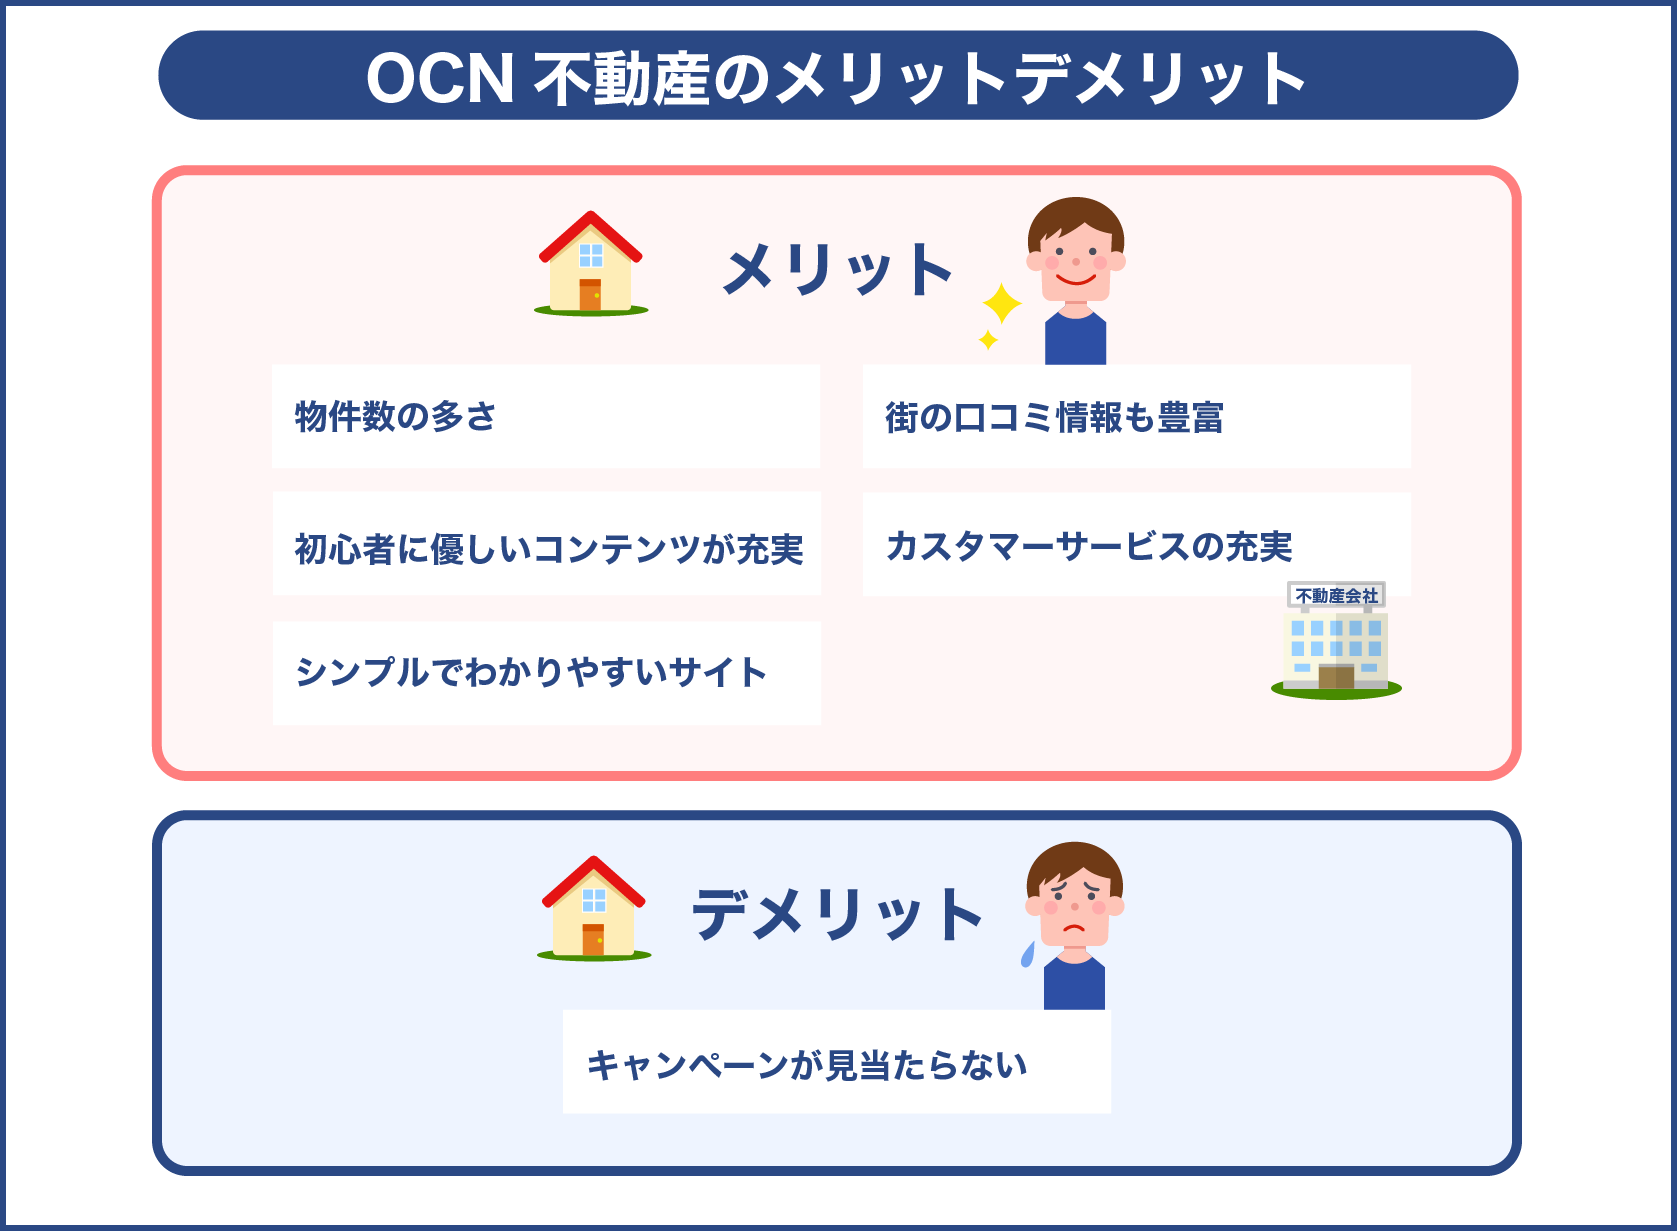 OCN 不動産のメリットデメリット